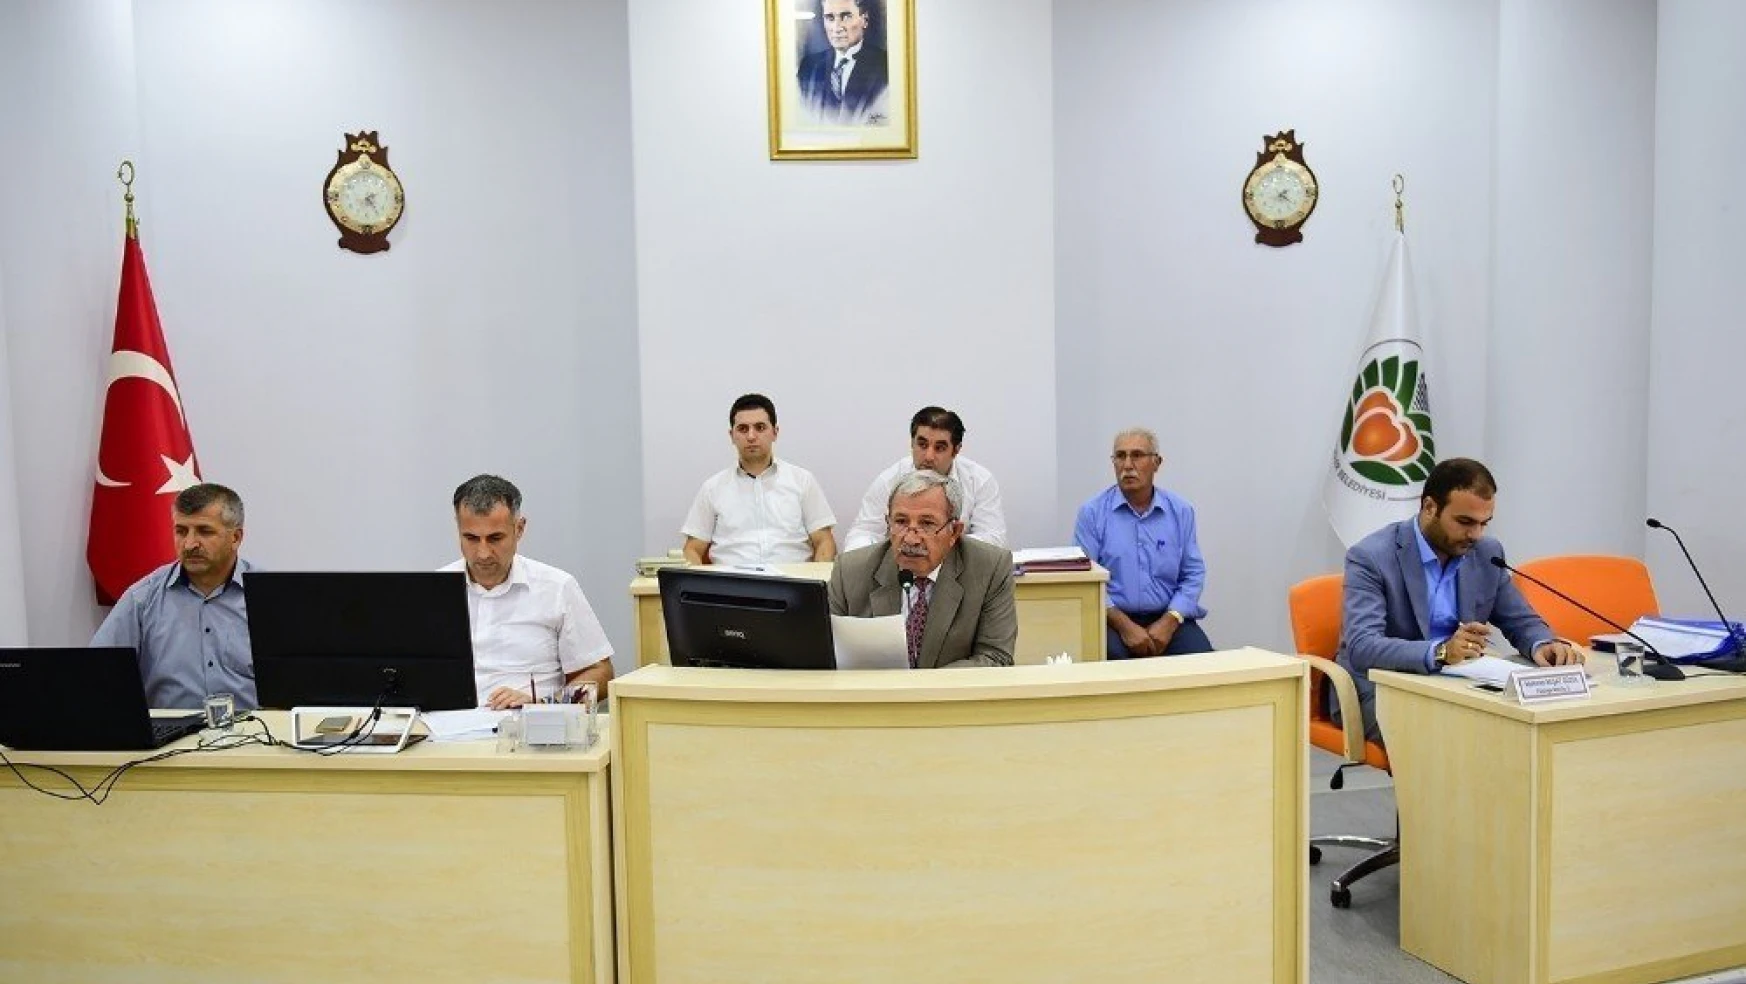 Büyükşehir Belediyesi Meclisi Eylül ayı meclis toplantılarına başladı
